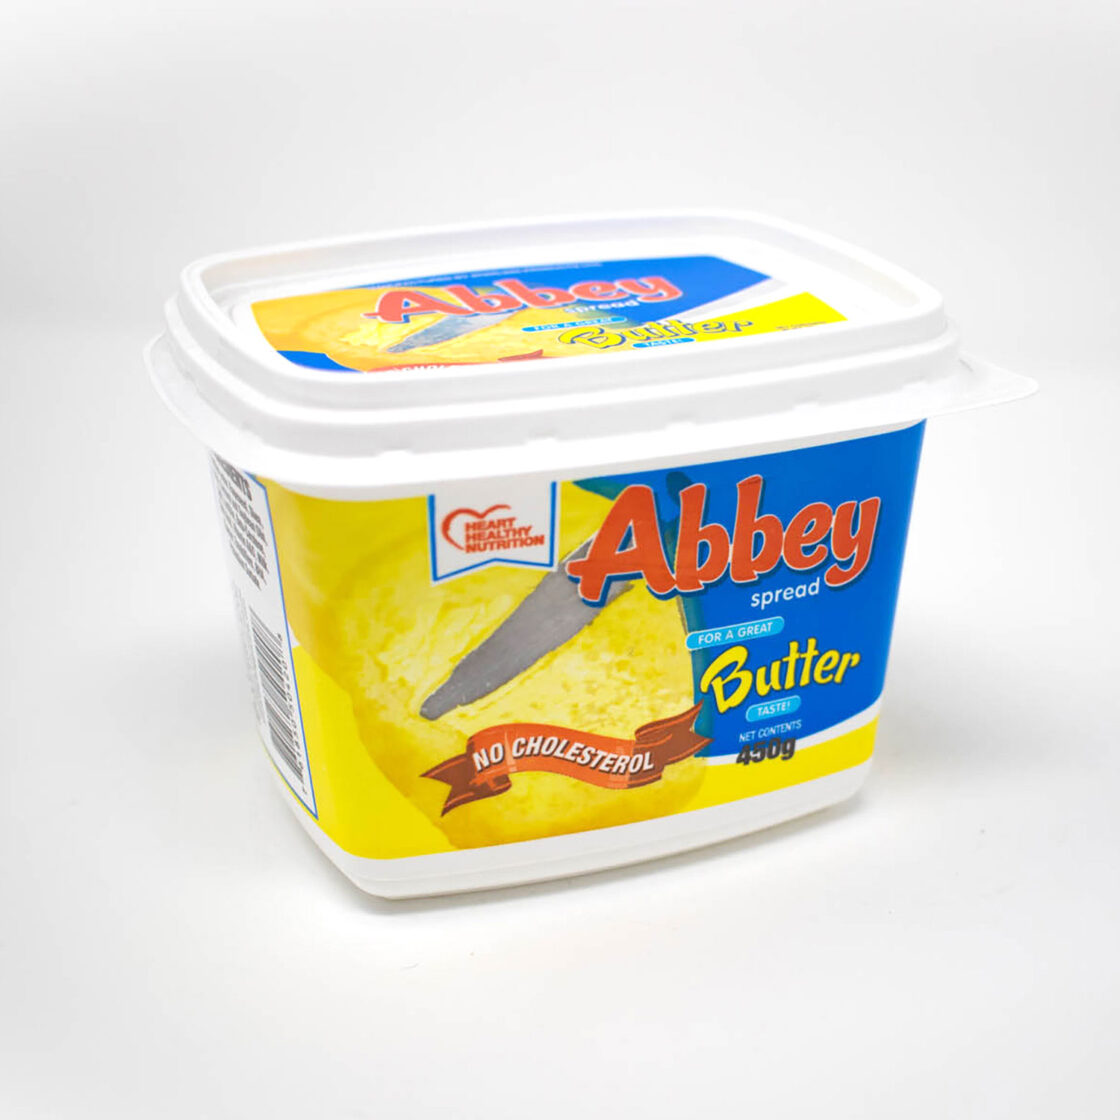 Abbey Butter Spread